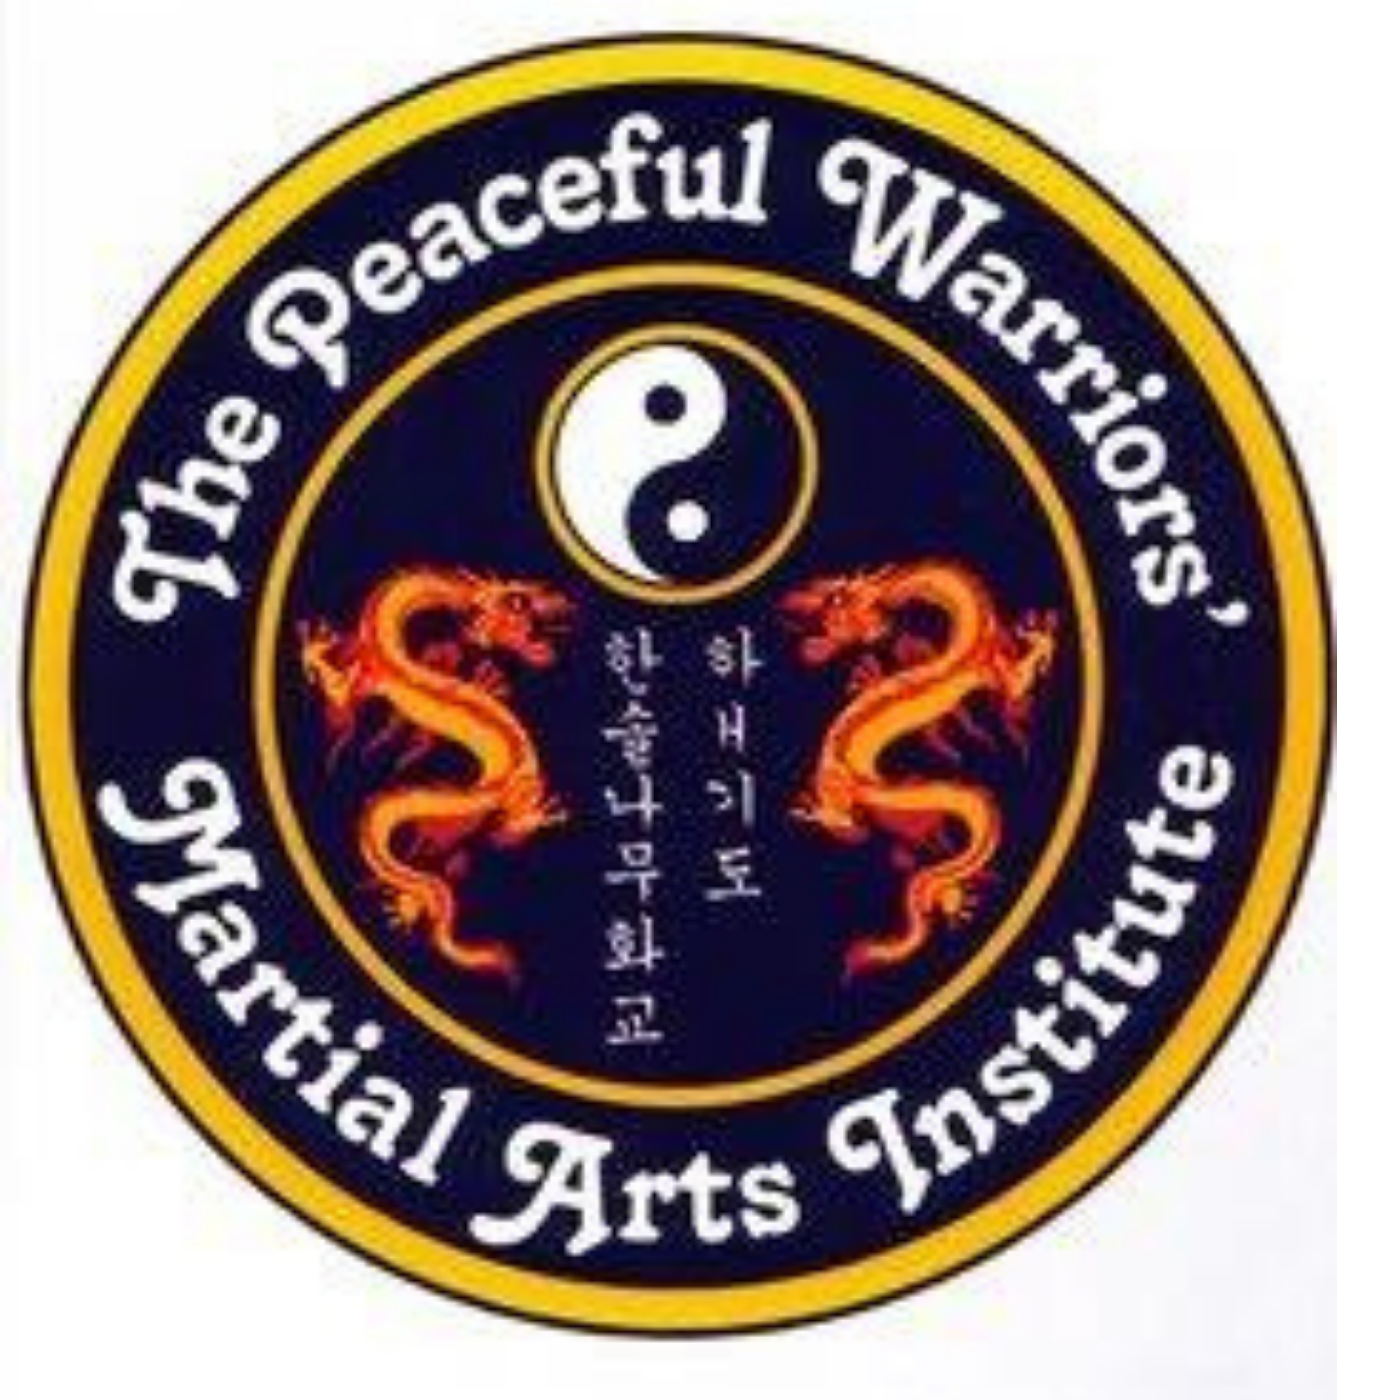 * Peaceful Warriors Martial Arts